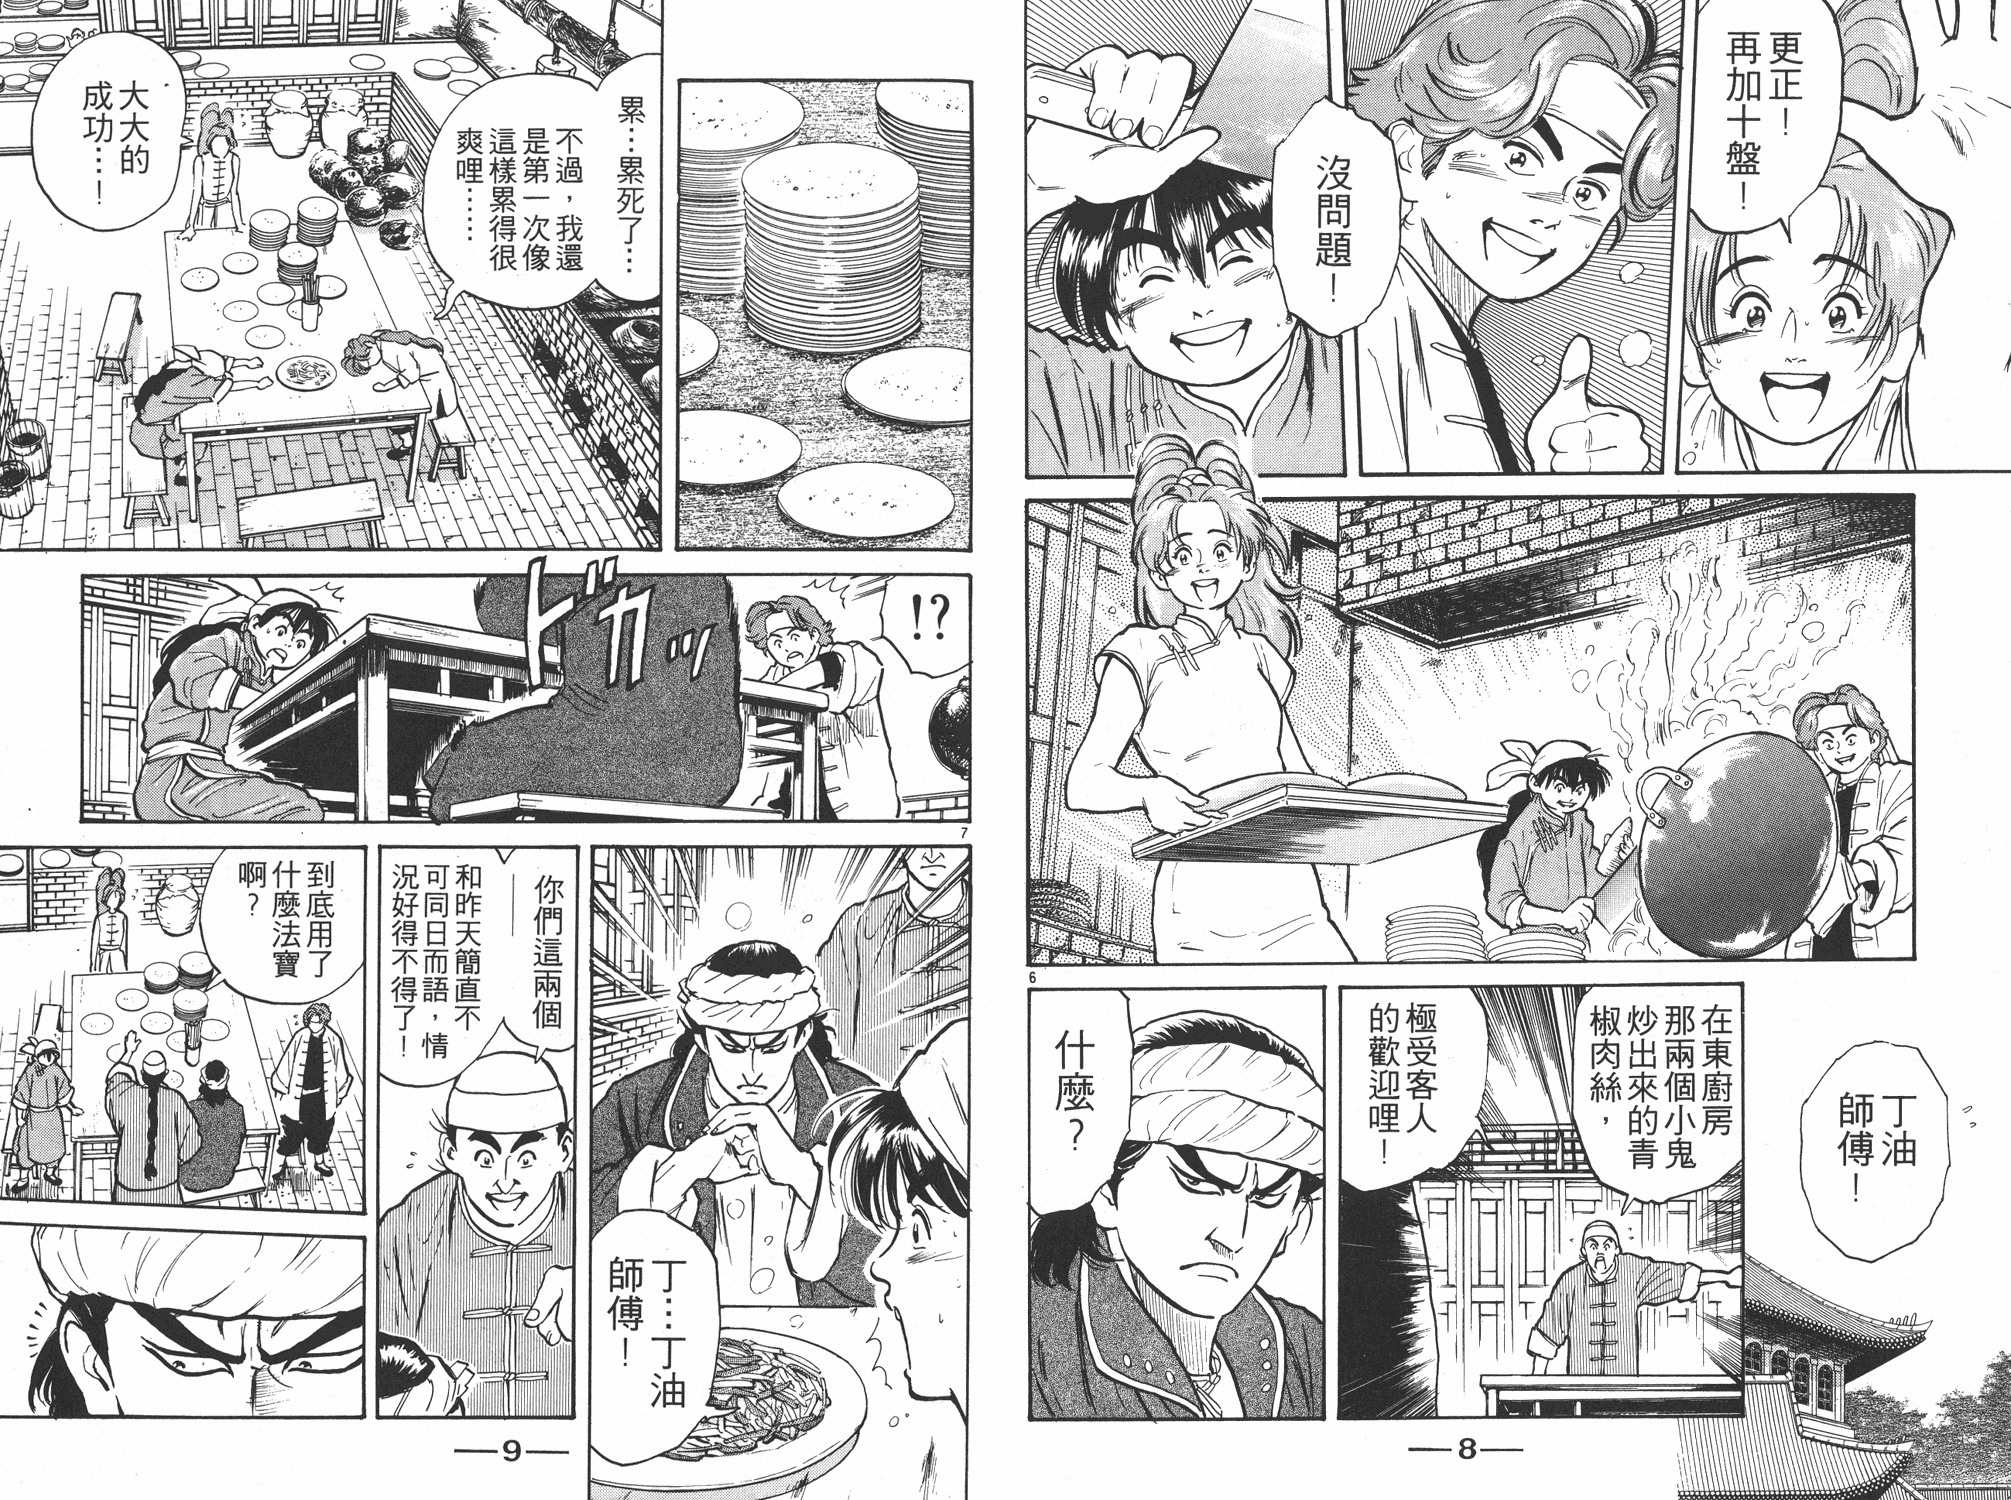 中华小当家国语版全集迅雷下载漫画,第2卷5图